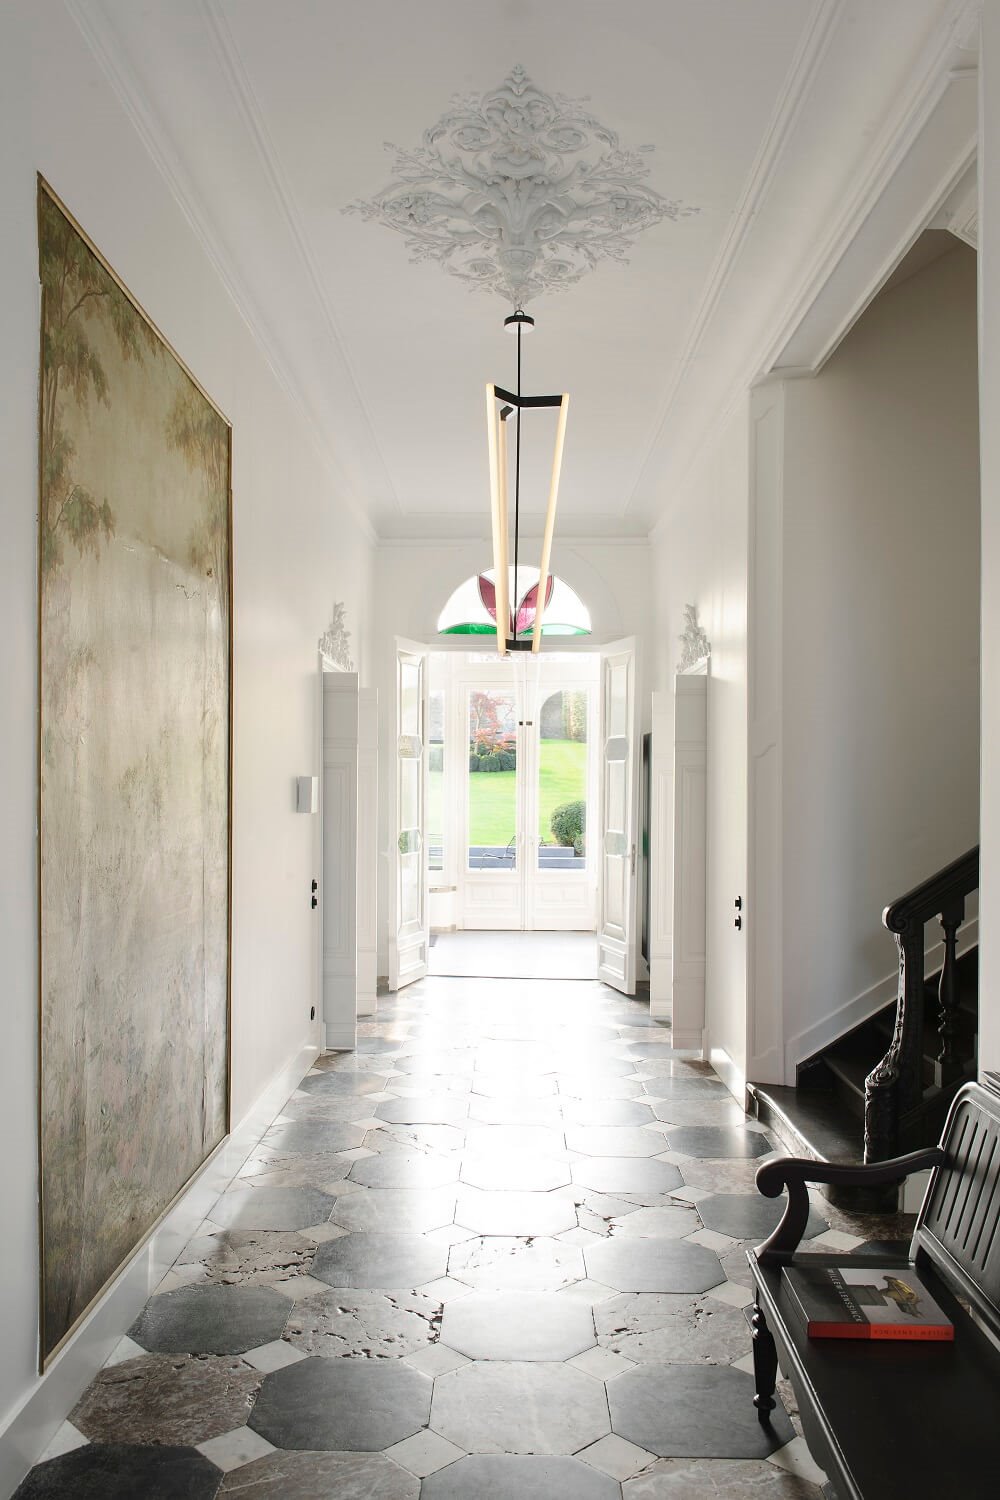 La mezcla de estilos también es un acierto en los recibidores grandes. Un suelo clásico y con historia se complementará muy bien con una lámpara ligera de diseño actual.